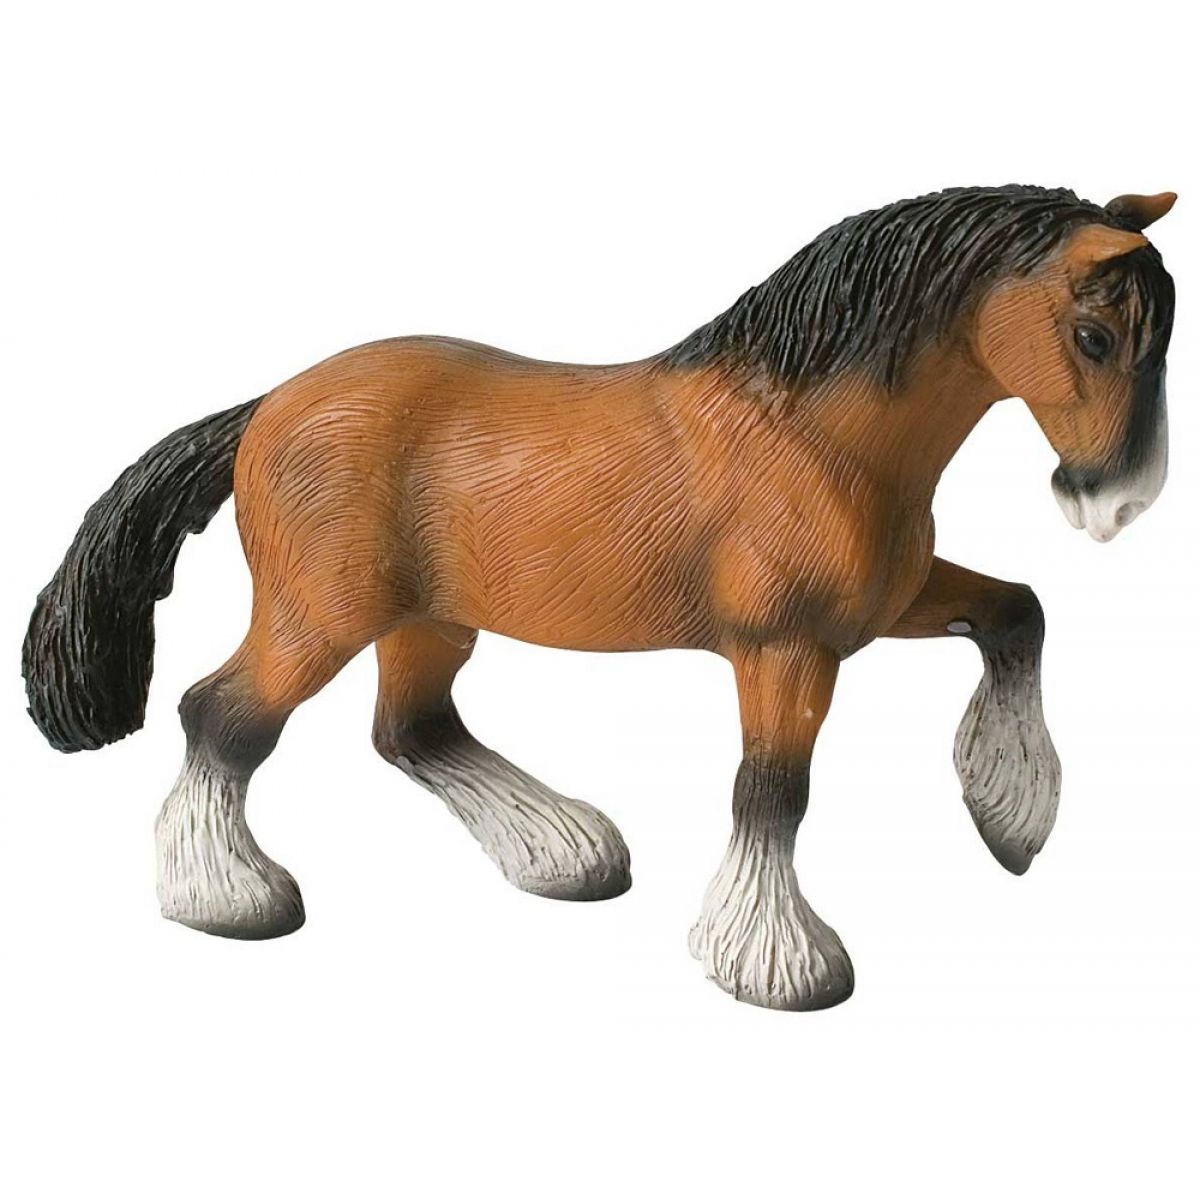 PVC-frei detailgetreu Spielfigur tolles Geschenk für Kinder zum fantasievollen Spielen 8,2 cm Pferd ca ideal als Torten-Figur Bullyland 62676 Lewitzer Stute